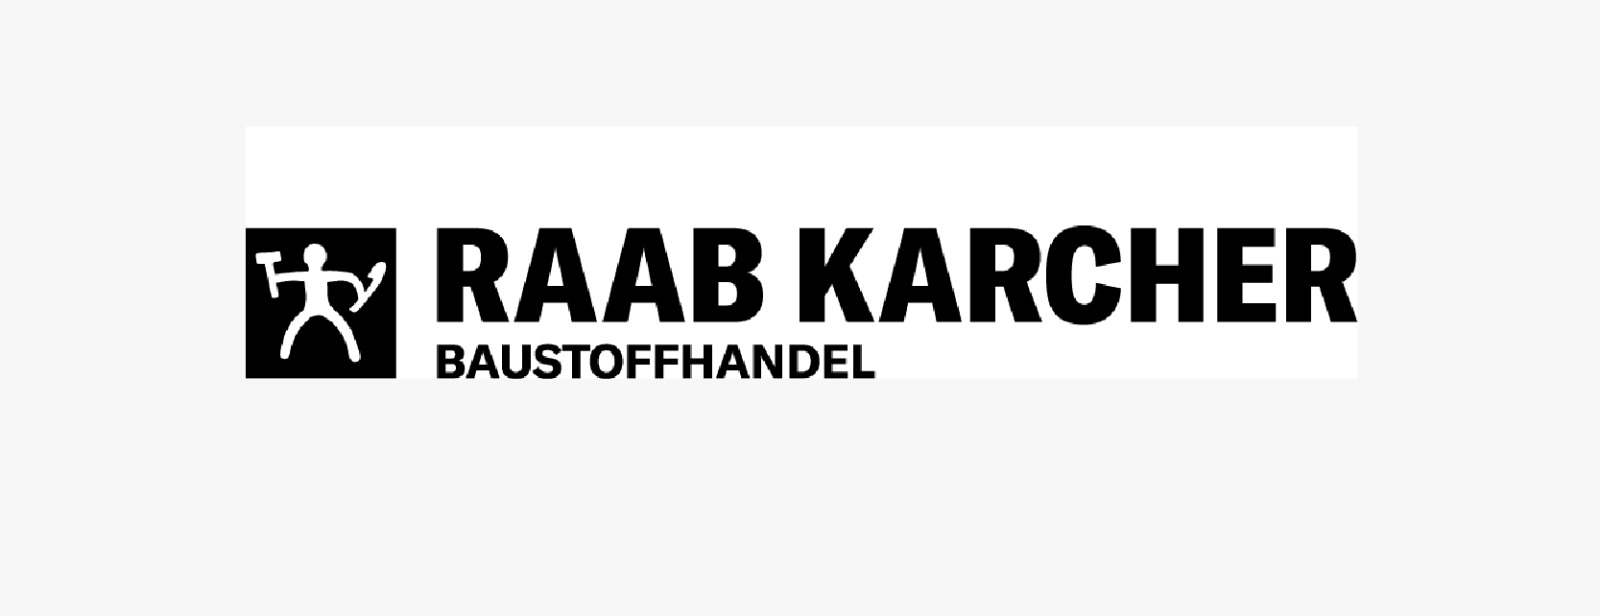 RAAB-KARCHER Baustoffhandel bei KF Renovierungen aus Delmenhorst